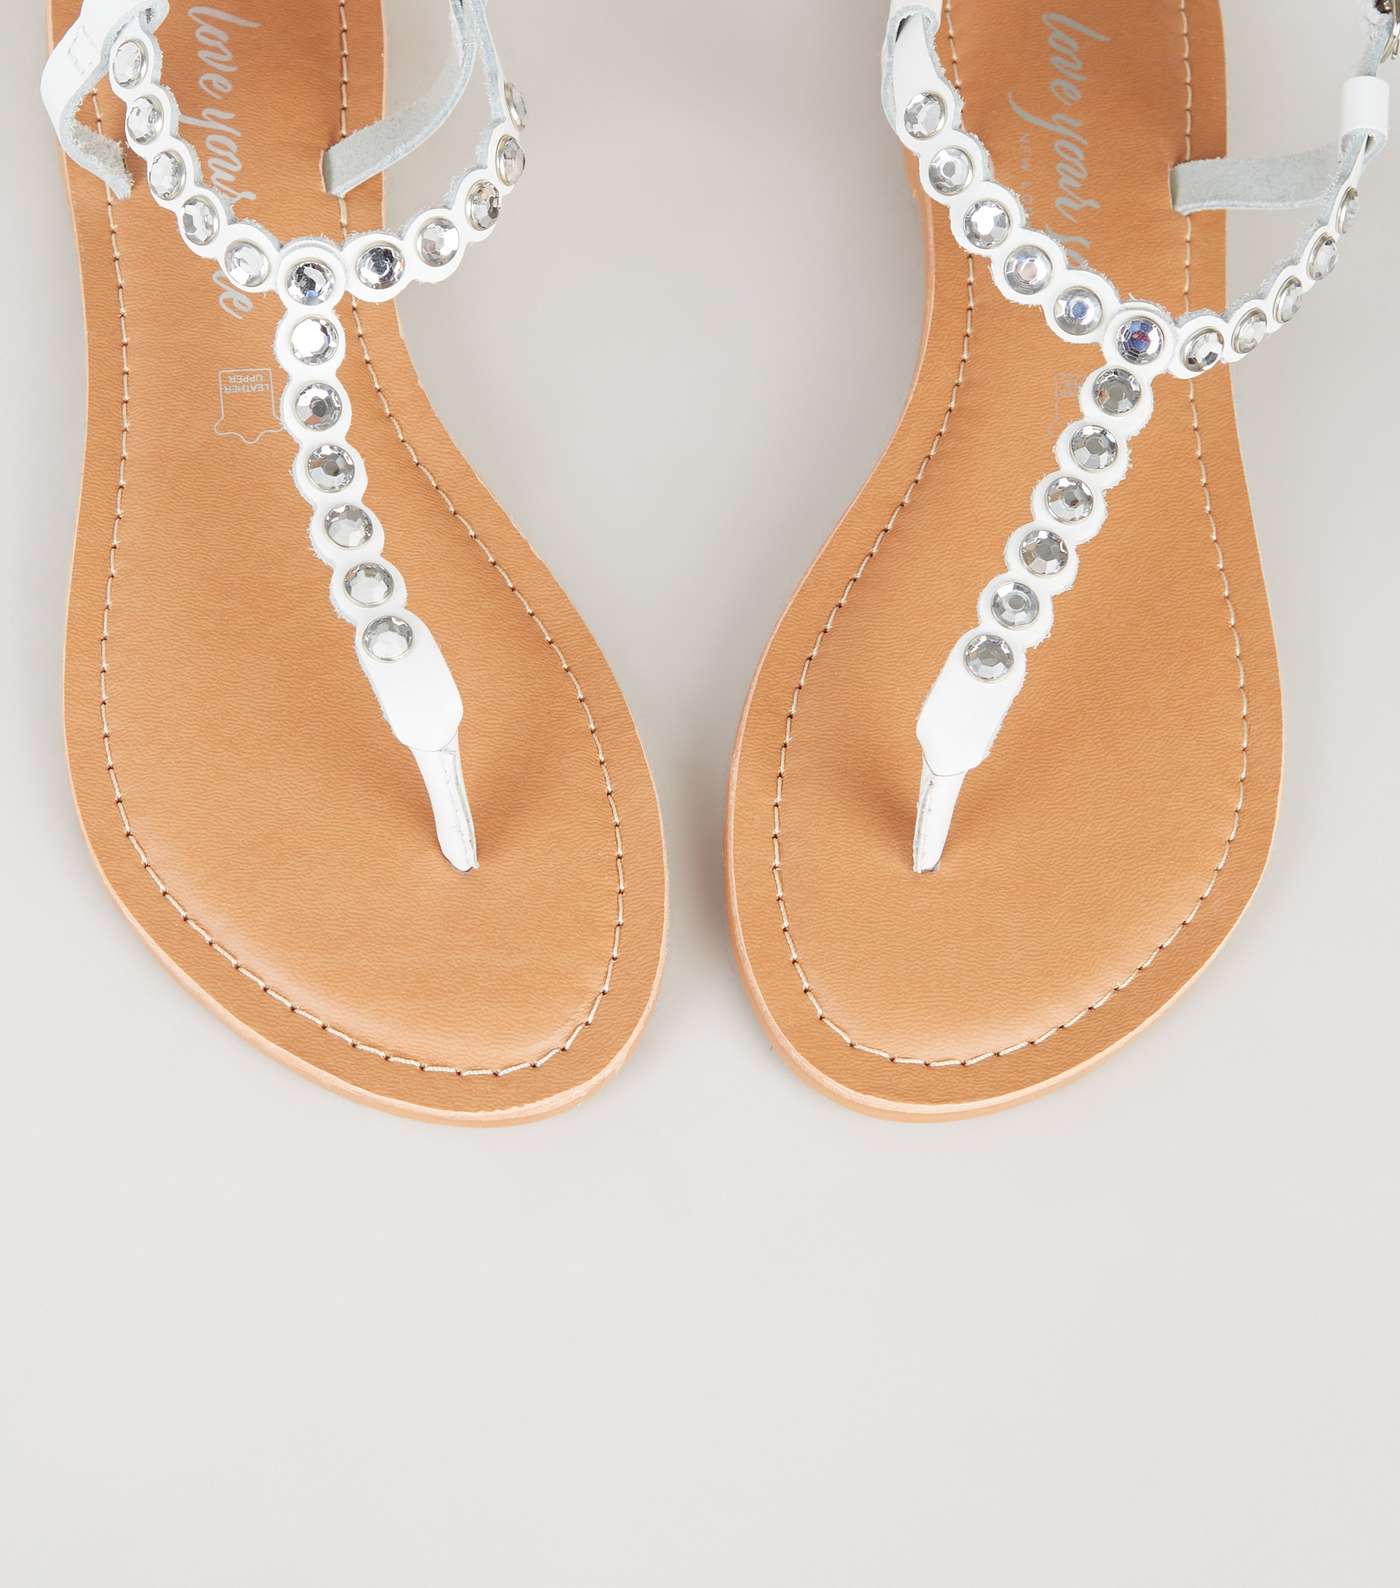 White Leather Diamanté Flat Sandals Image 4